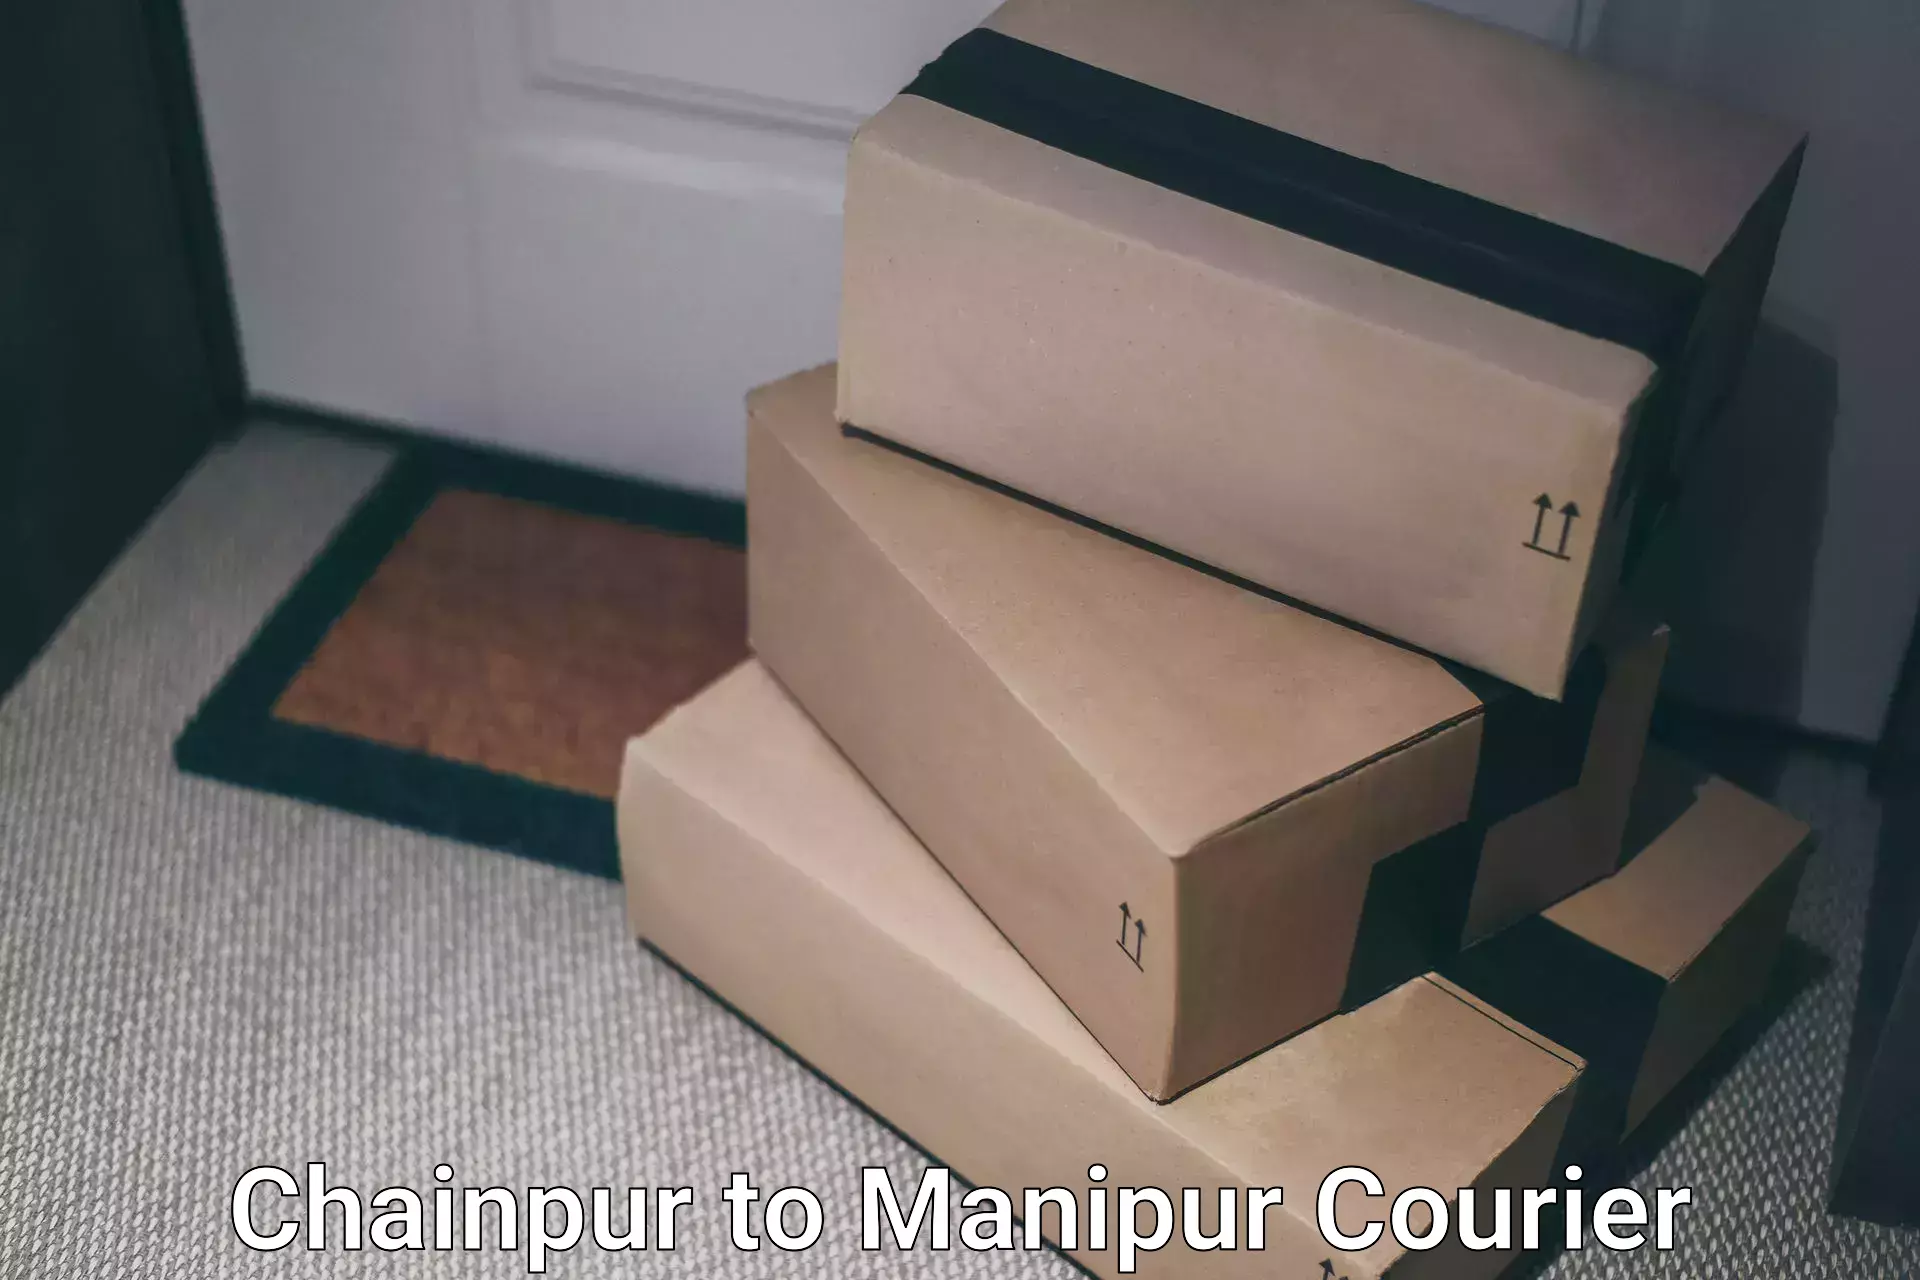 Global shipping solutions Chainpur to Churachandpur